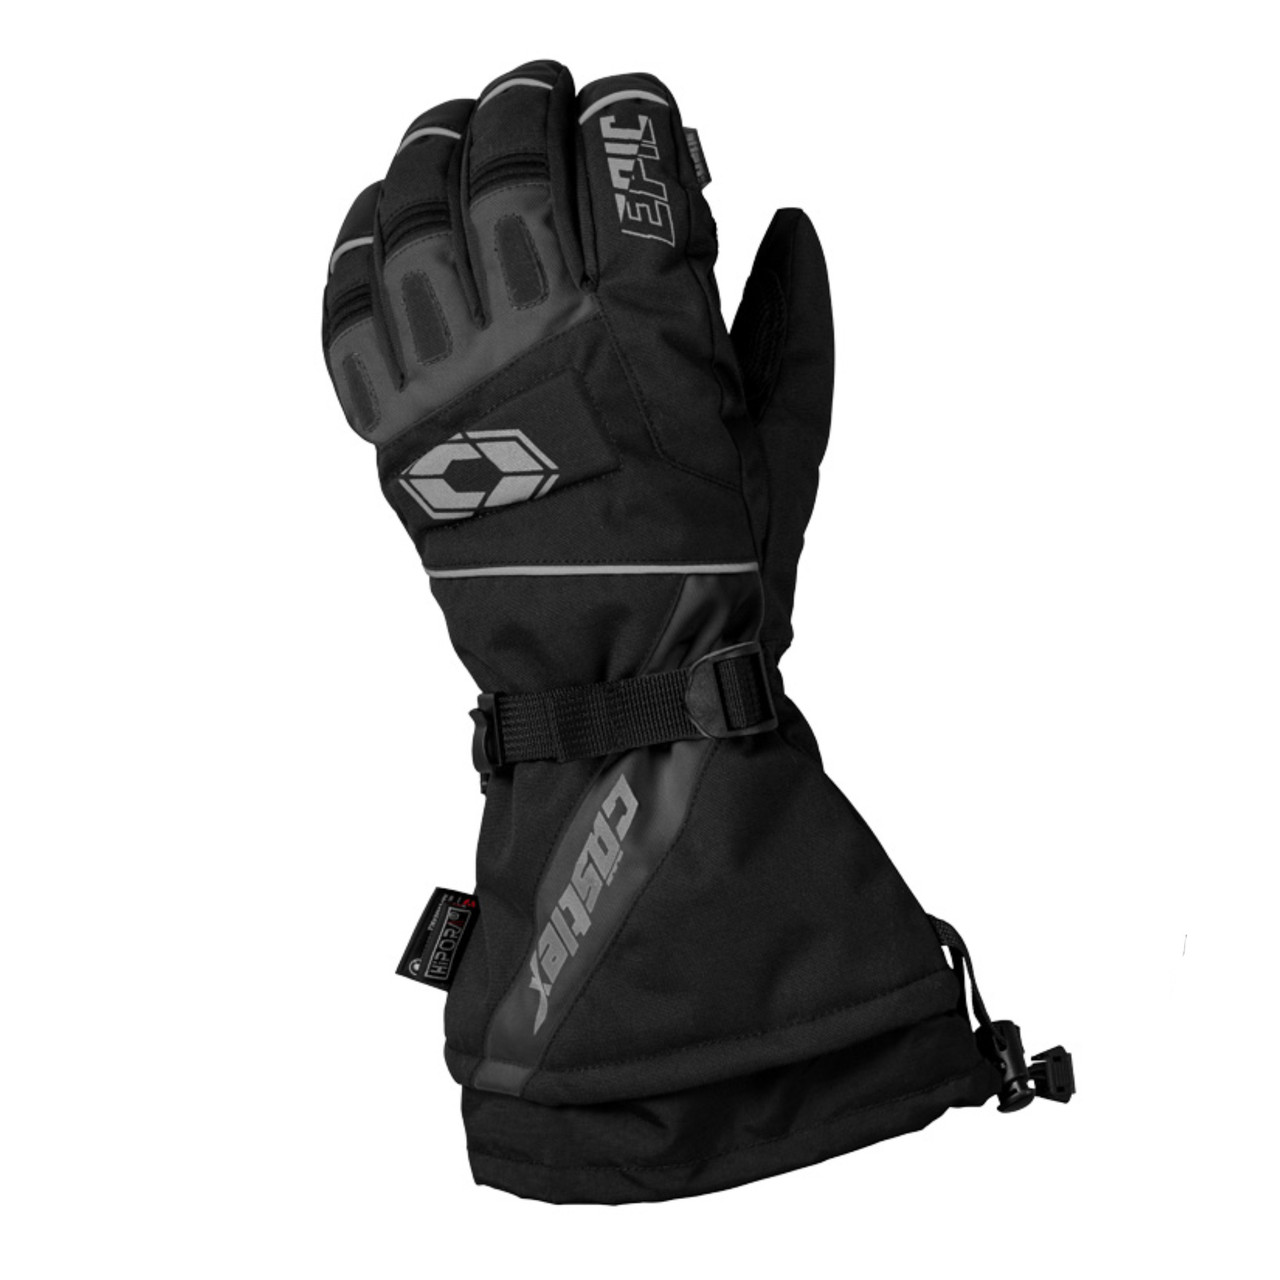 Castle X New Men's 2X-Large Black/Charcoal Epic Plus Gloves, 74-6069